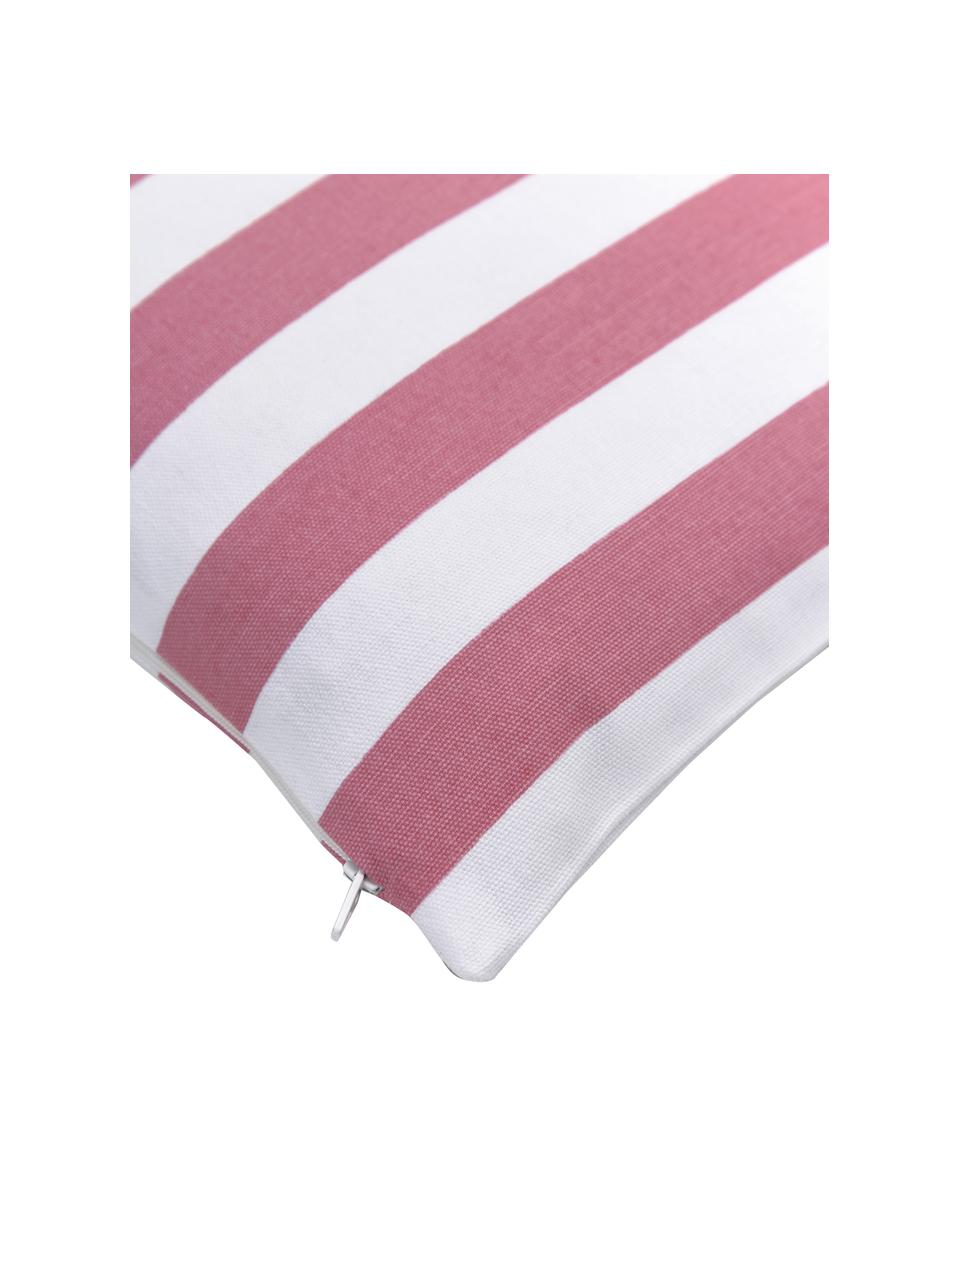 Federa arredo a righe color rosa/bianco Timon, 100% cotone, Rosa, bianco, Larg. 30 x Lung. 50 cm